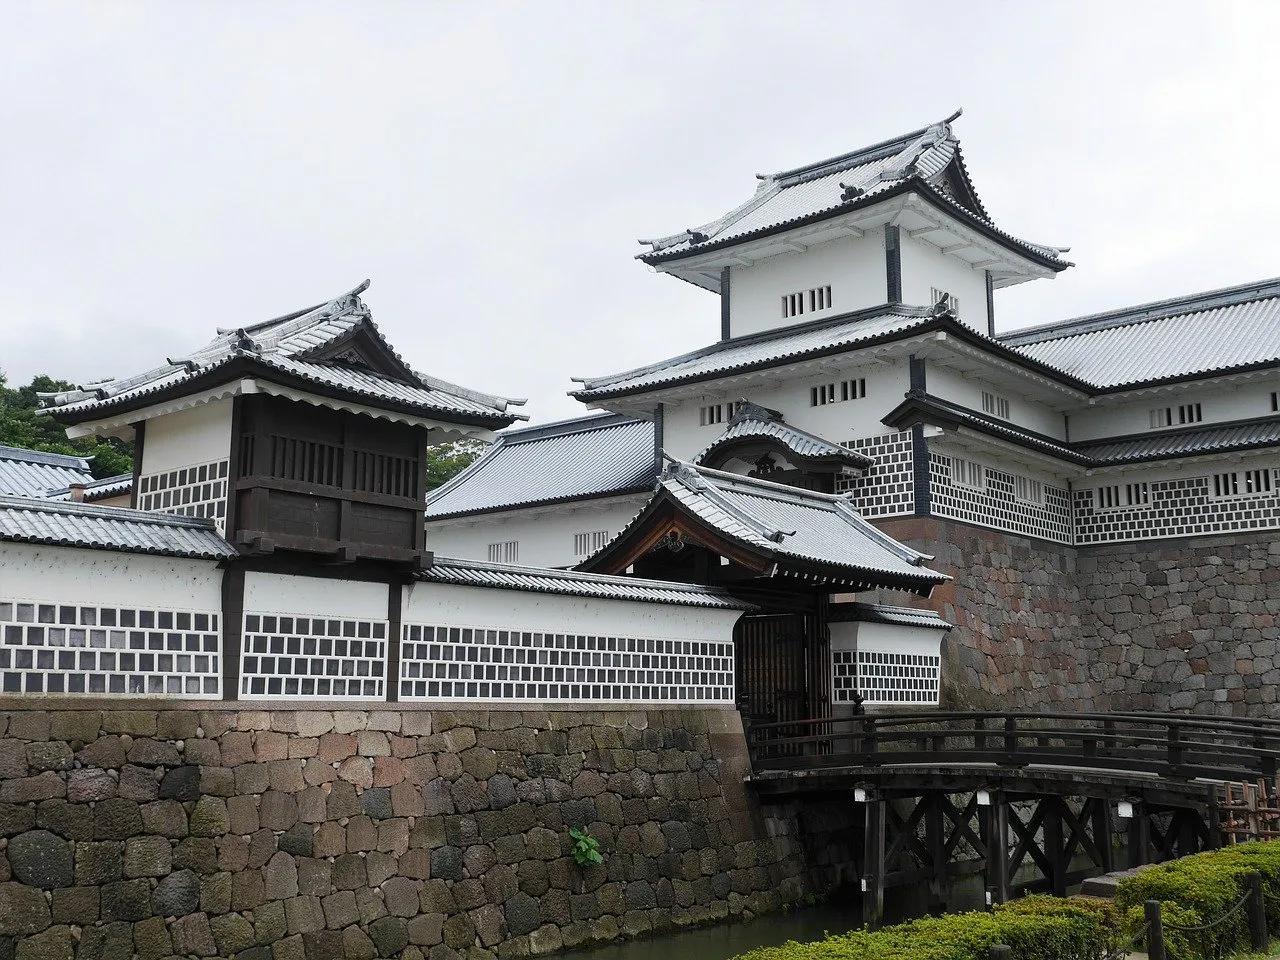 Vista del castillo de Kanazawa